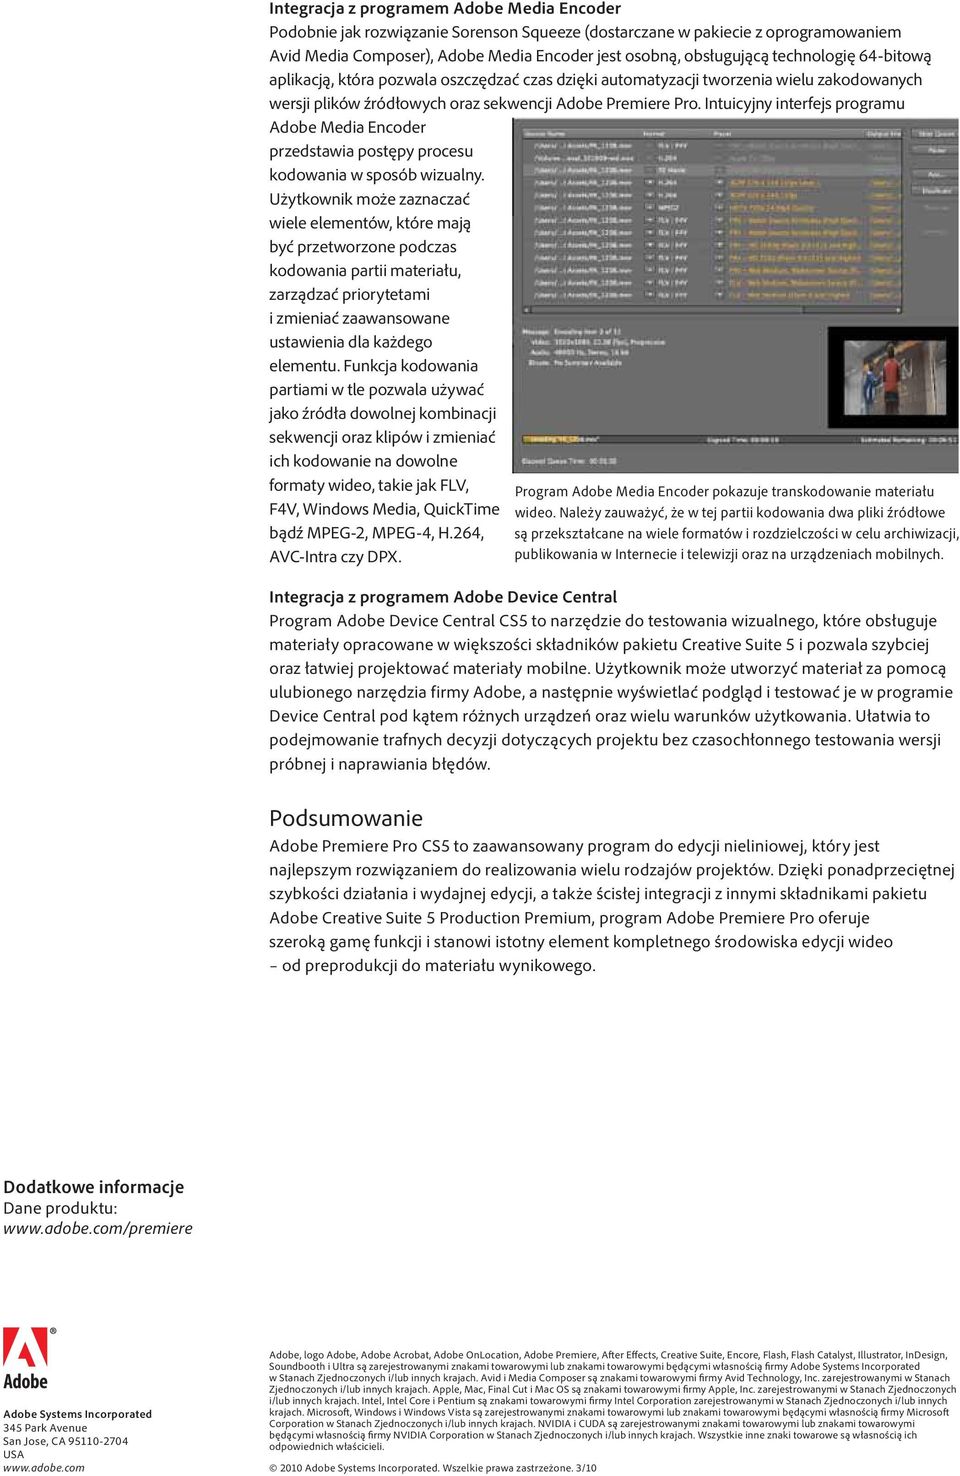 Intuicyjny interfejs programu Adobe Media Encoder przedstawia postępy procesu kodowania w sposób wizualny.